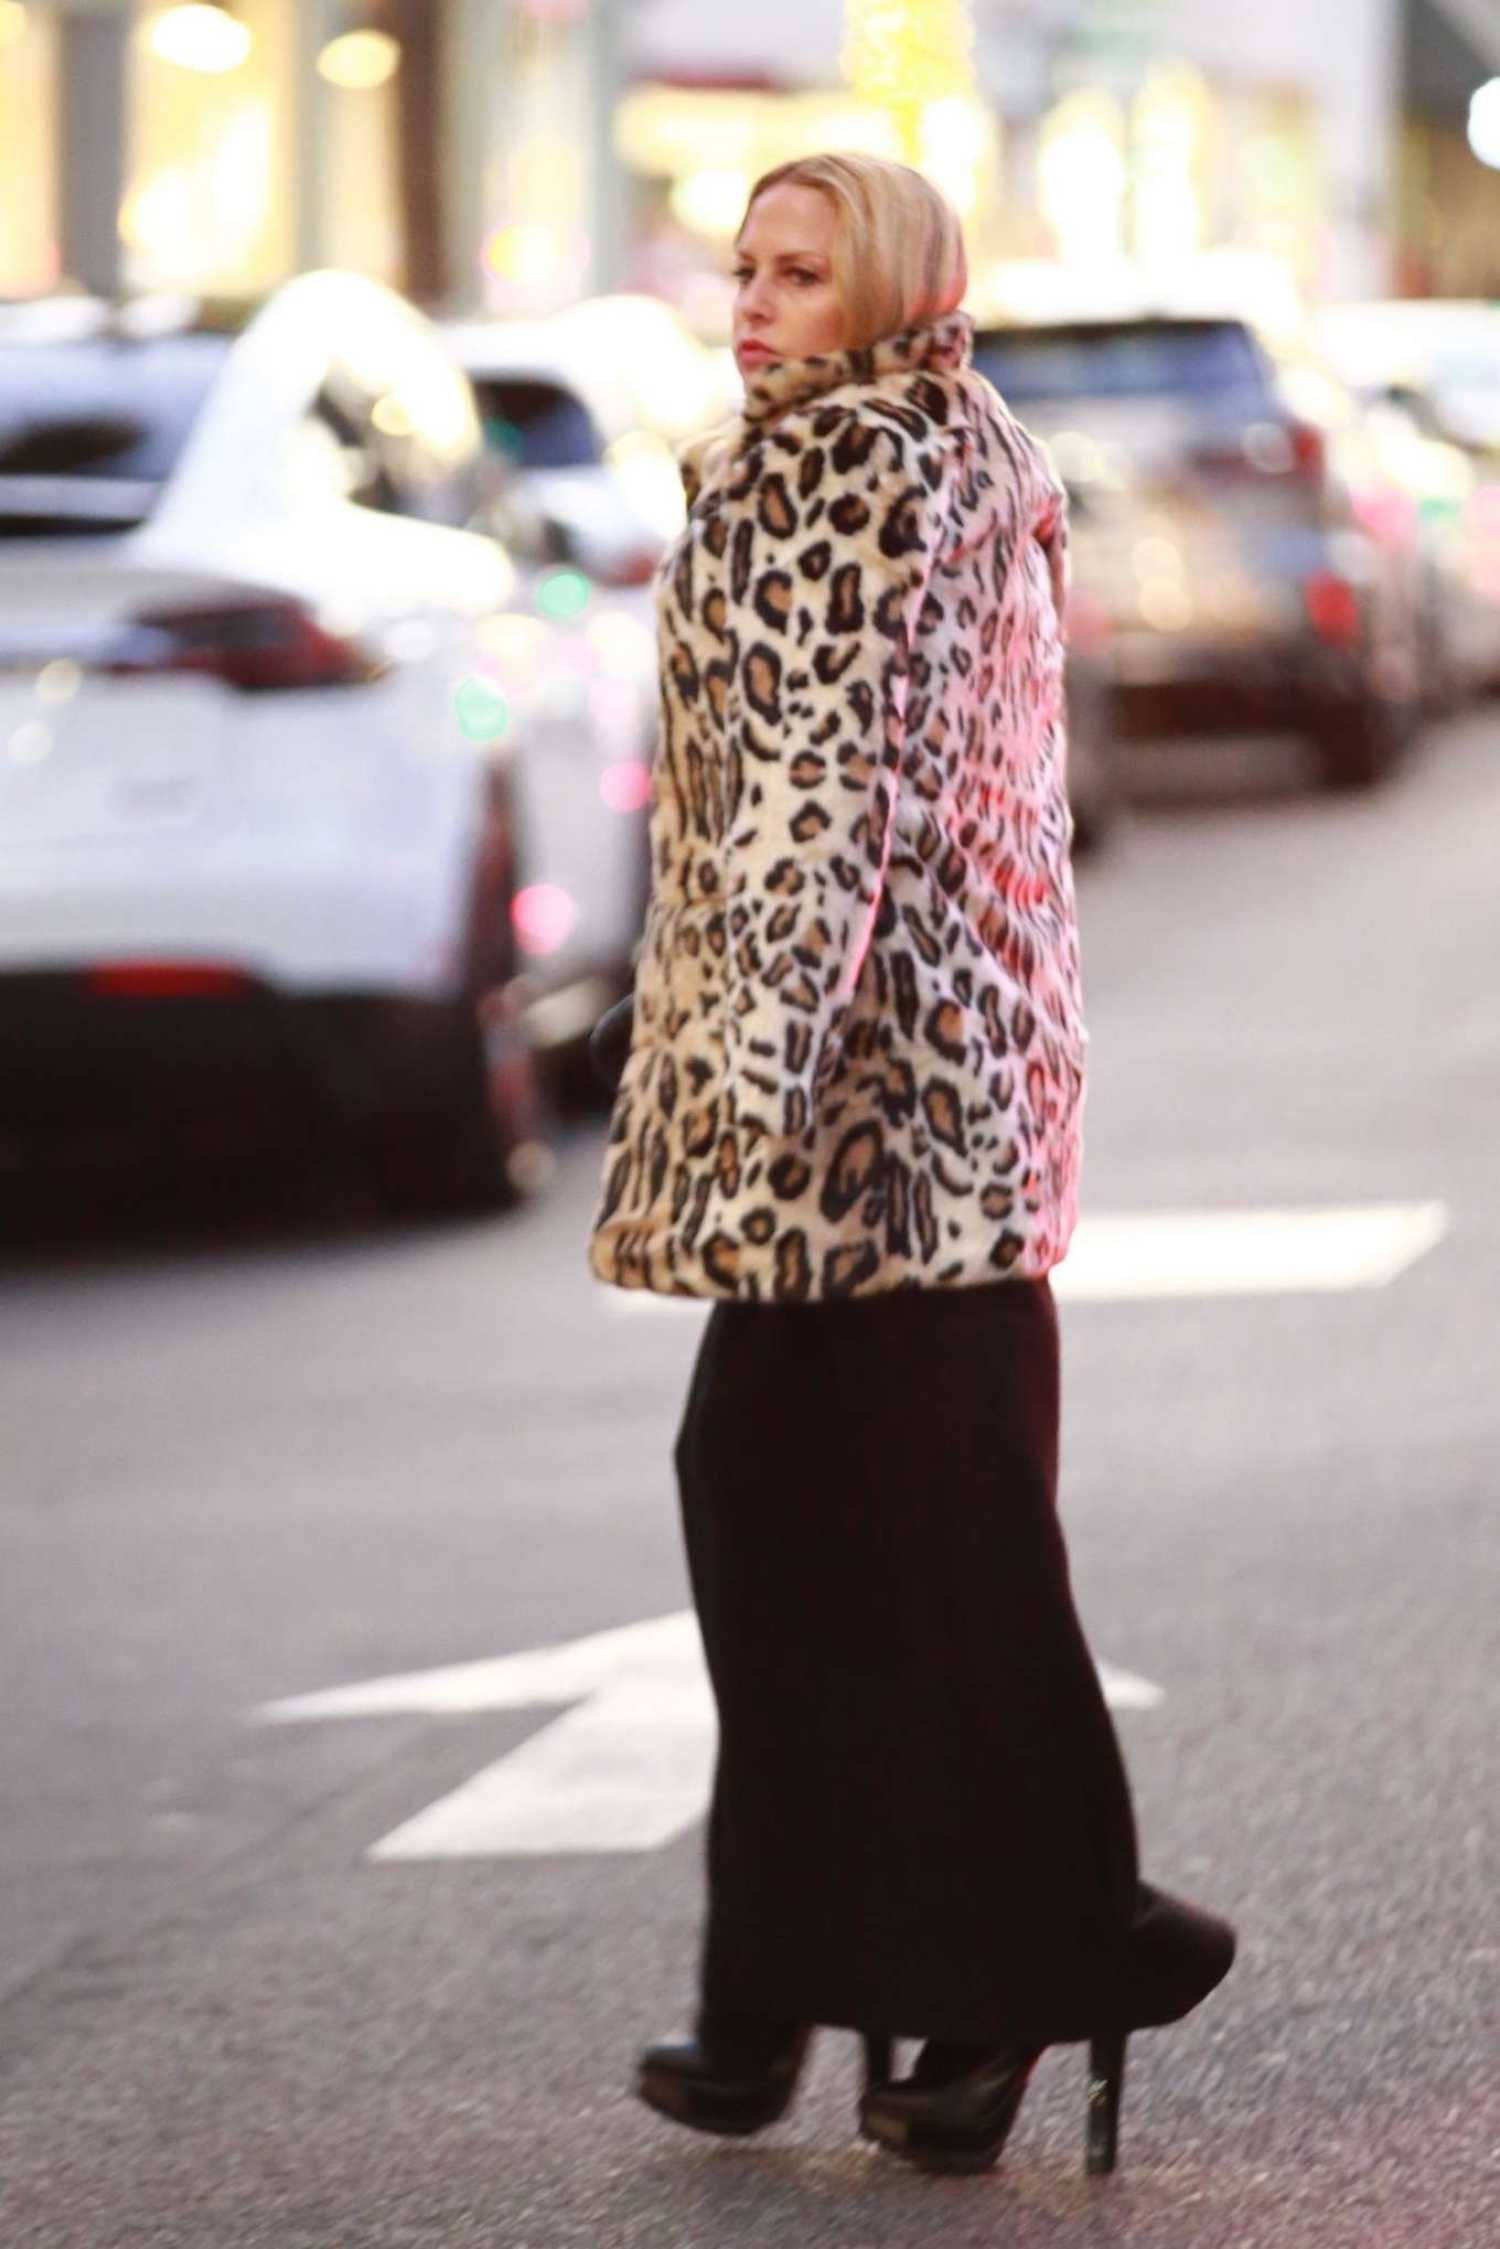 Rachel Zoe in a Leopard Print Fur Coat Was Seen Out in Beverly Hills